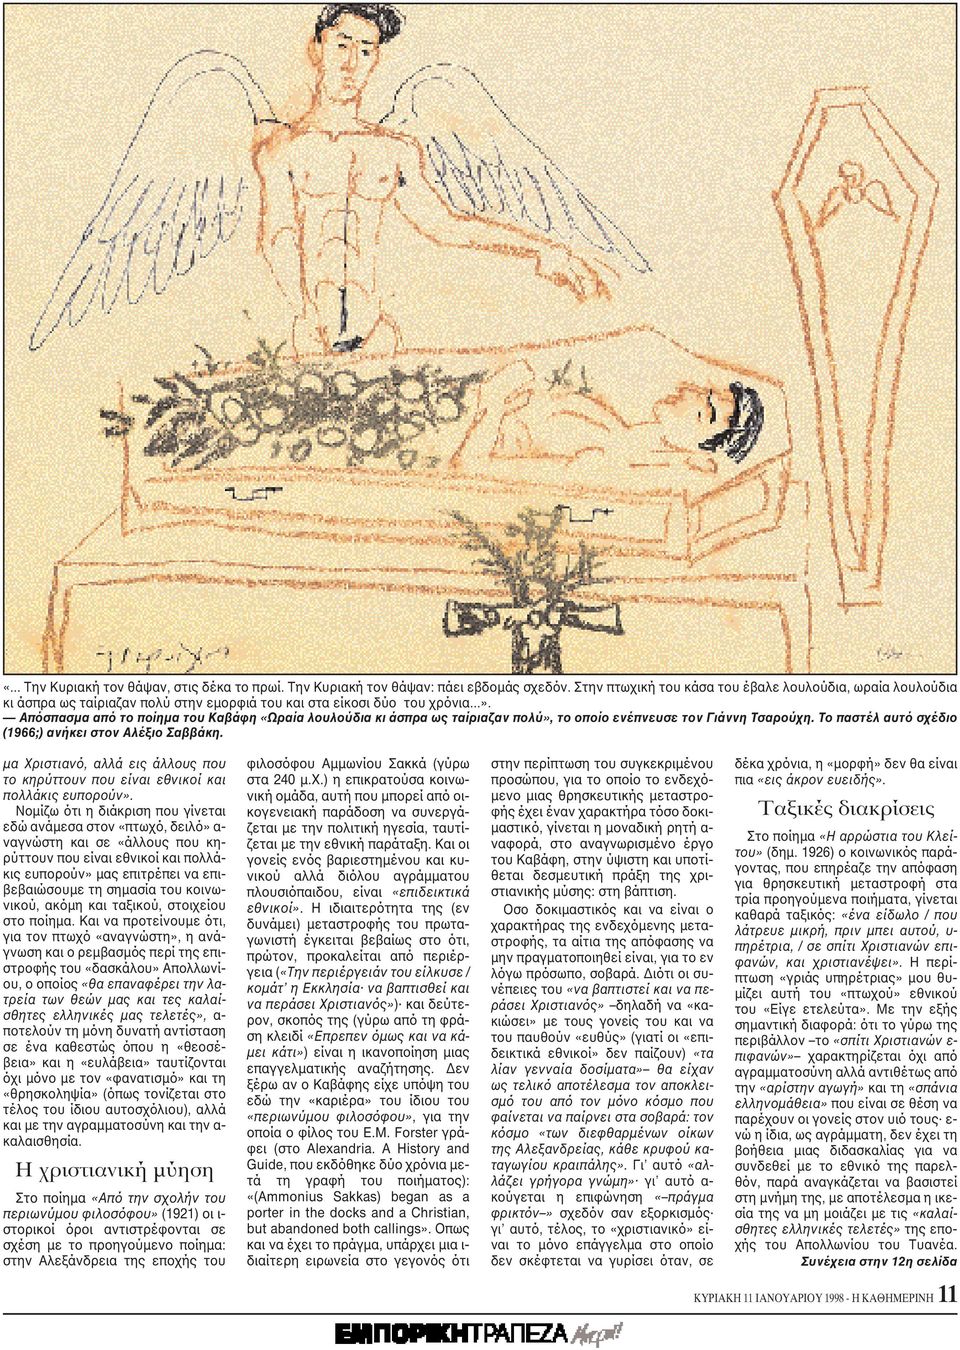 Aπόσπασμα από το ποίημα του Kαβάφη «Ωραία λουλούδια κι άσπρα ως ταίριαζαν πολύ», το οποίο ενέπνευσε τον Γιάννη Tσαρούχη. Tο παστέλ αυτό σχέδιο (1966;) ανήκει στον Aλέξιο Σαββάκη.